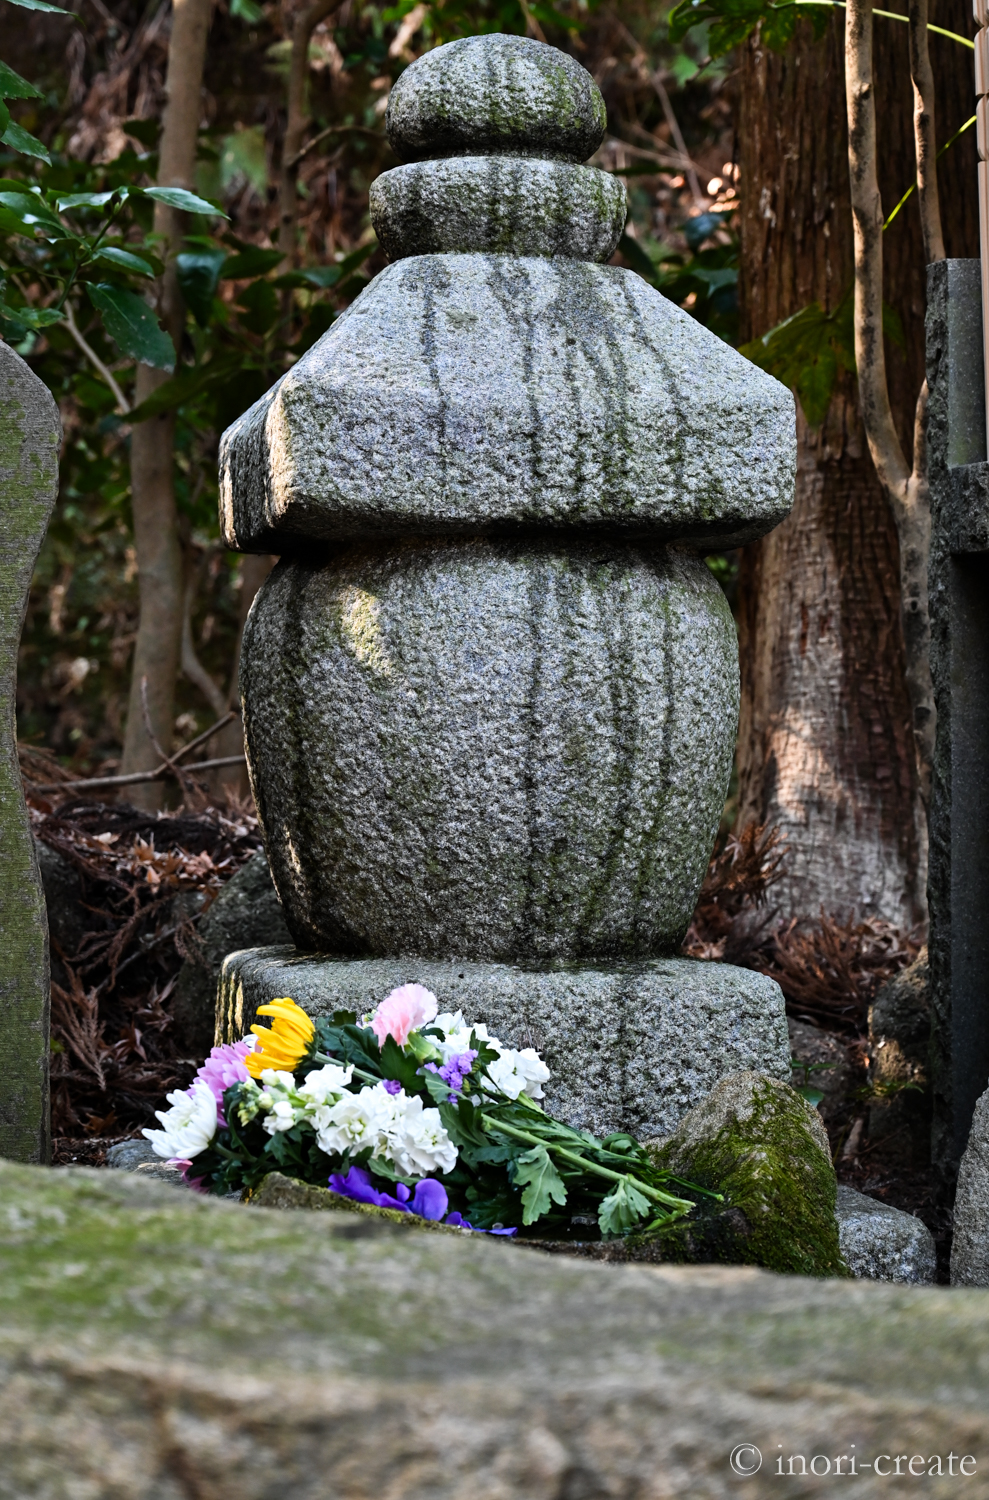 鎌倉東慶寺にある小畠宏充先生墓所。京都のイサ工房さんの手によって作られた一石五輪塔。手前の石はお参りする際に手荷物を置いたりするのにちょうど良い。元々そこにあったかのように石が自然に配置されている。